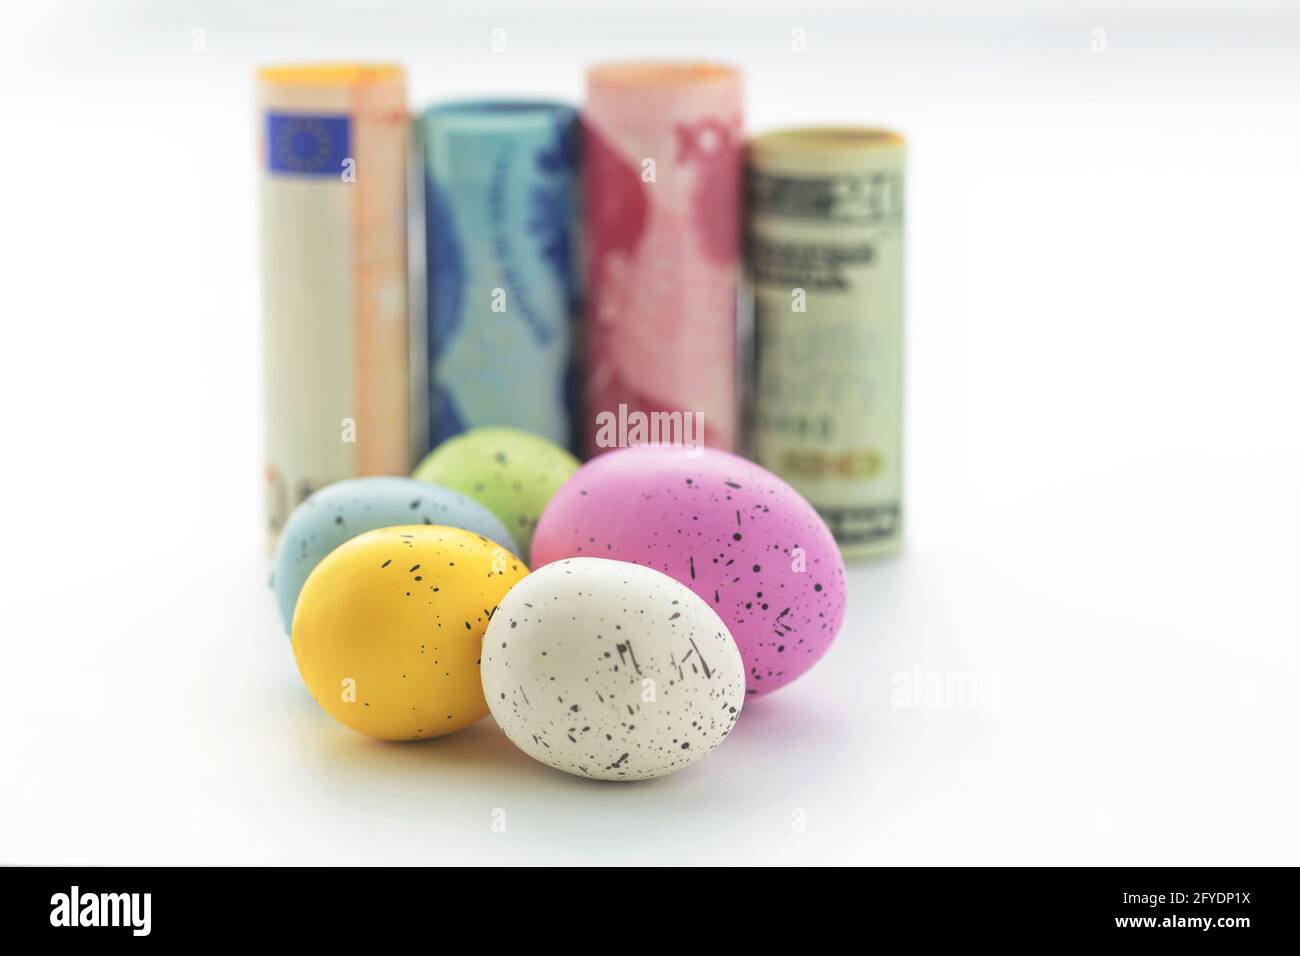 Les concepts commerciaux et financiers se reflètent dans des symboles de diversification différents devises internationales et cinq œufs colorés sur fond blanc Banque D'Images